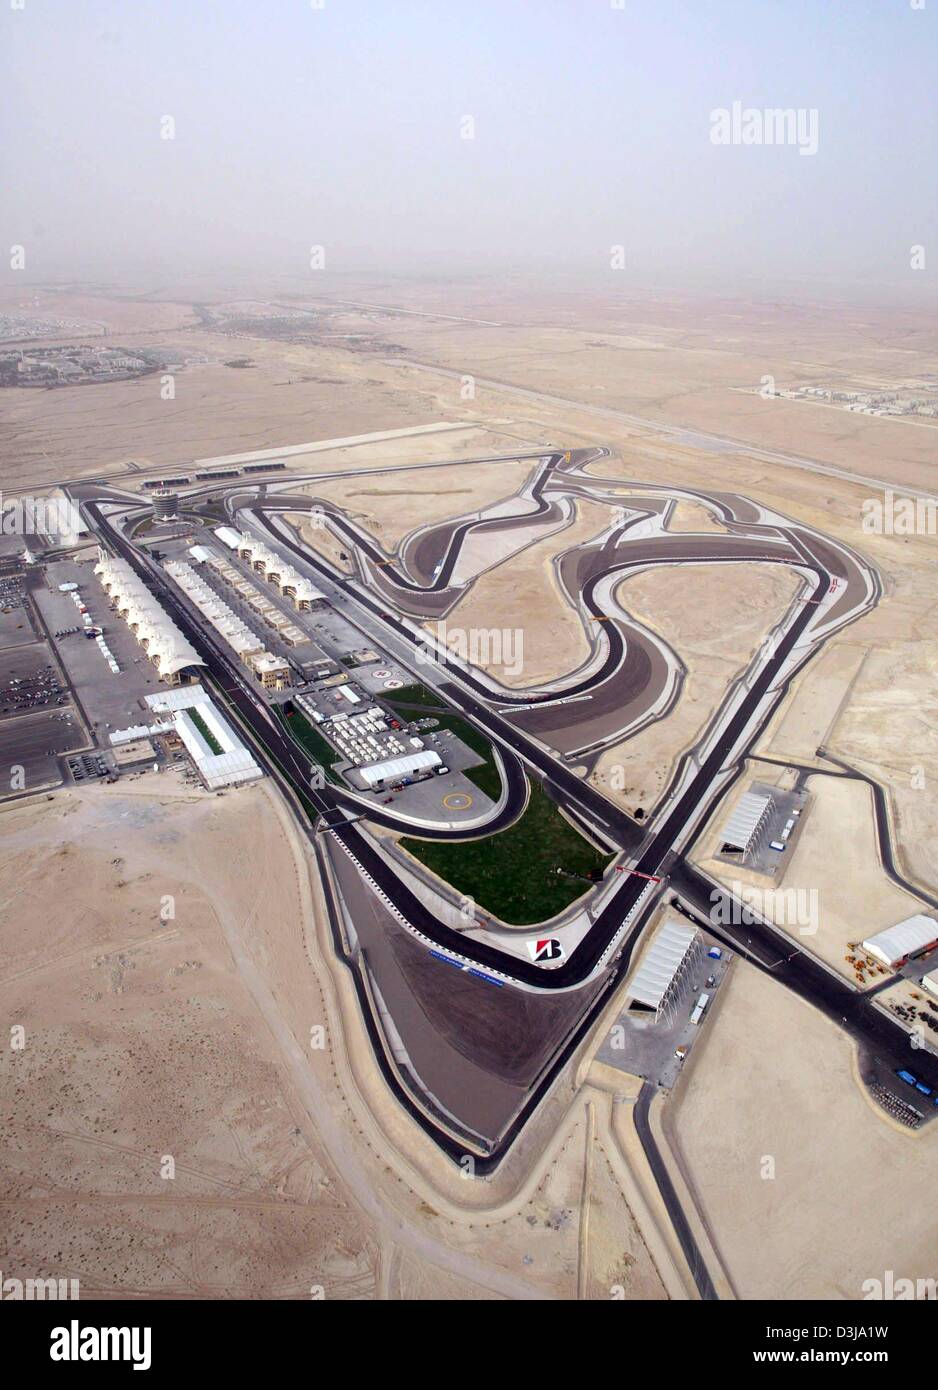 (Dpa) Vue aérienne de la piste F1 'Circuit International de Bahreïn' qui se trouve dans la chaleur le Jeudi, 1 avril 2004, dans près de la capitale Manama Bahreïn. Le 4 avril 2004, la troisième course de Formule 1 qui aura lieu sur cette hippodrome nouvellement construit qui a été construit en seulement 16 mois et permet autour de 70,000 spectateurs de suivre la course. Prince héritier Cheikh Salman bin Hamad al Ka Banque D'Images